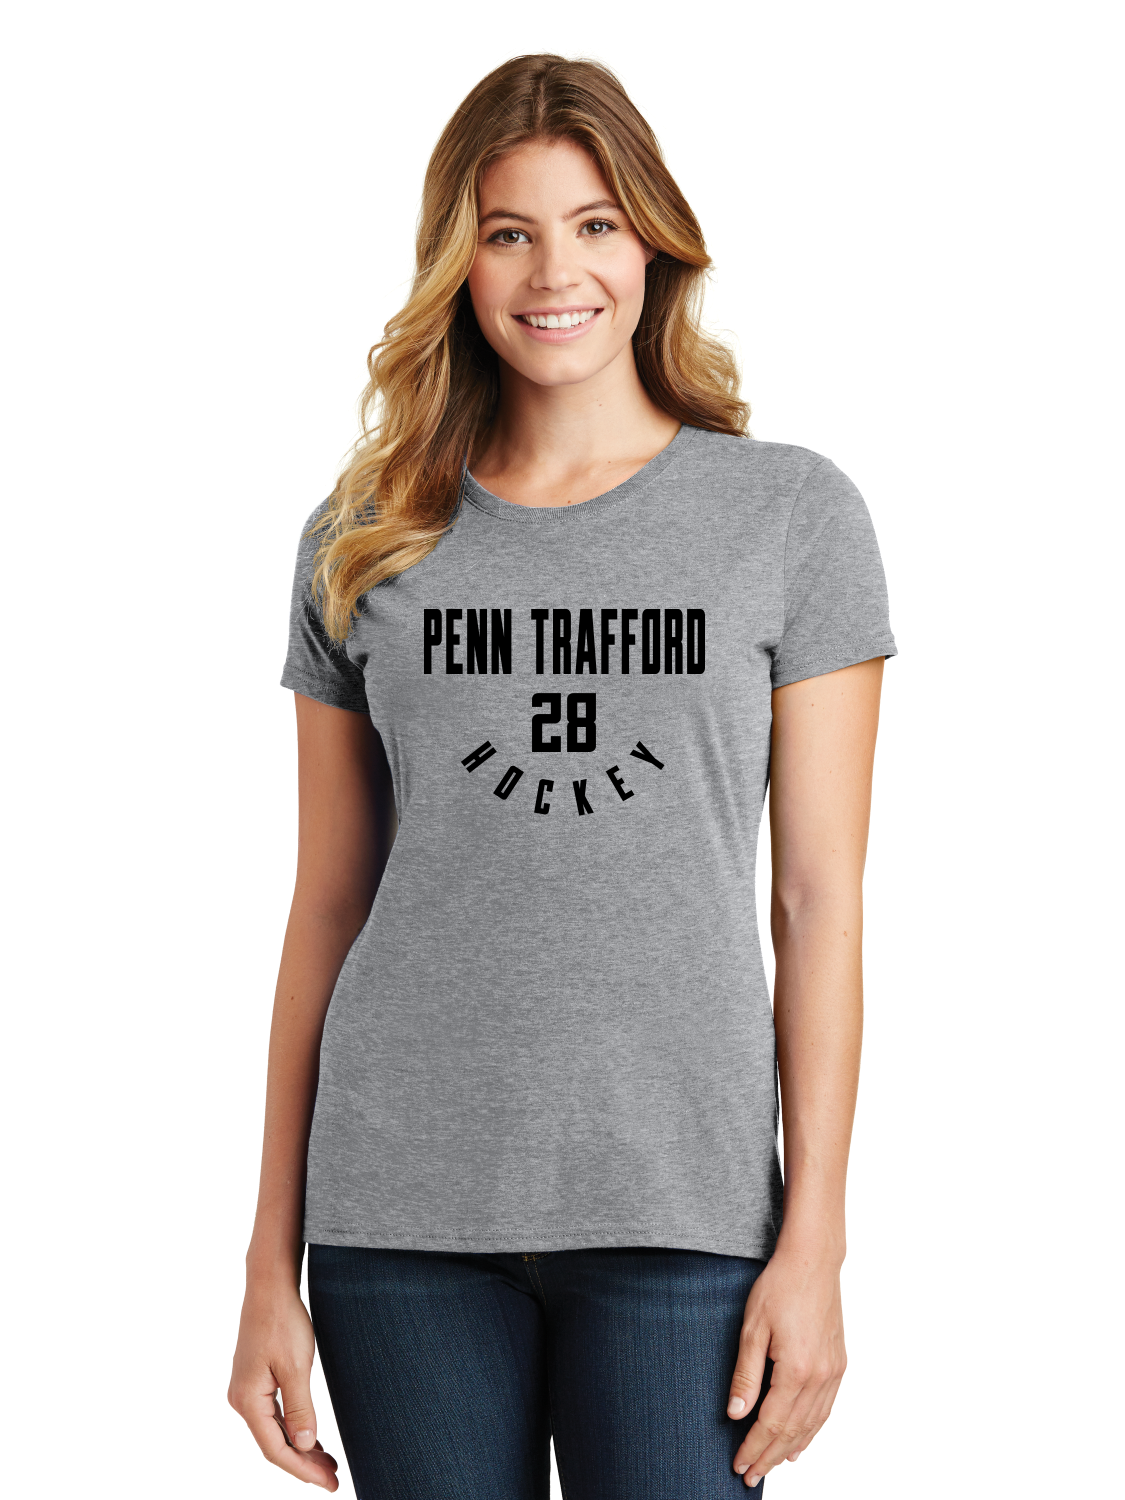 Player # Ladies T-Shirt - Penn Trafford